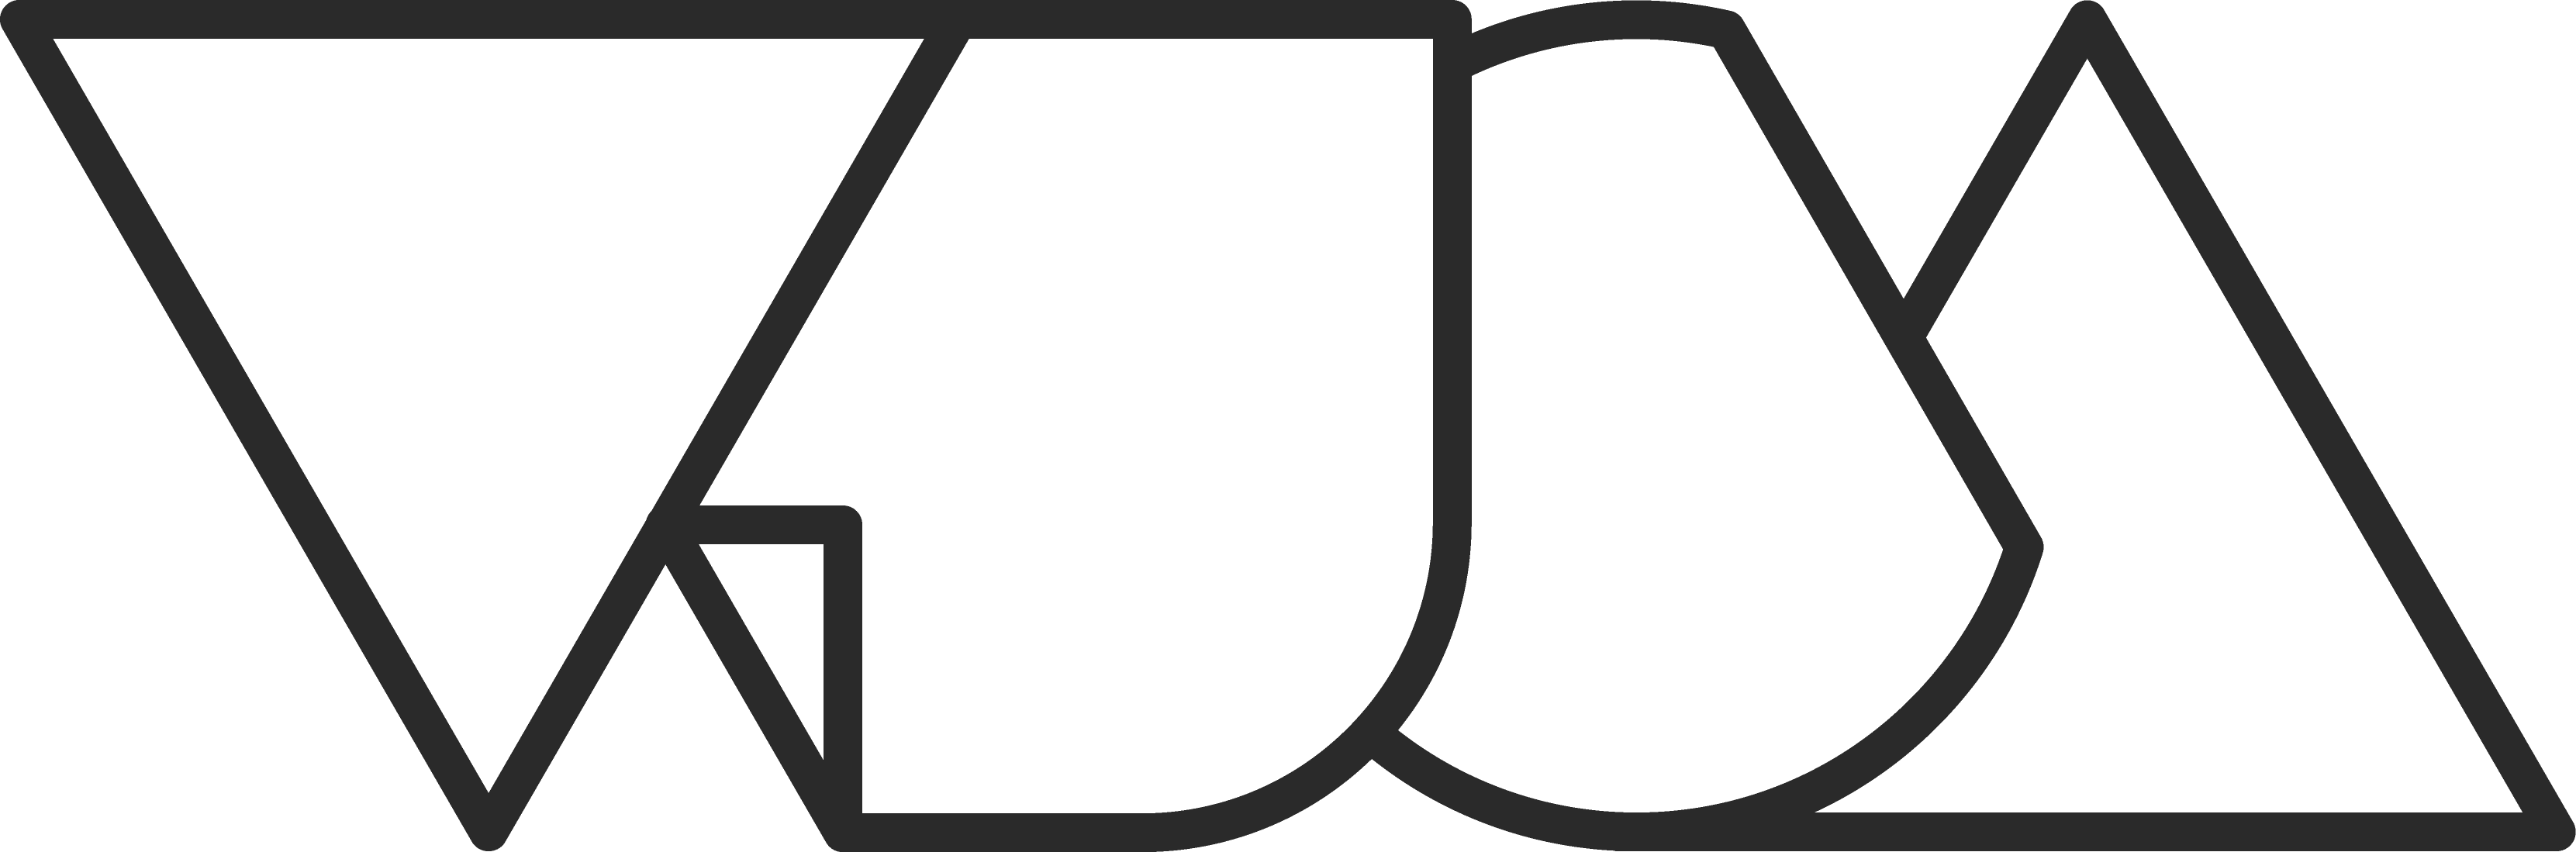 VUCA logo